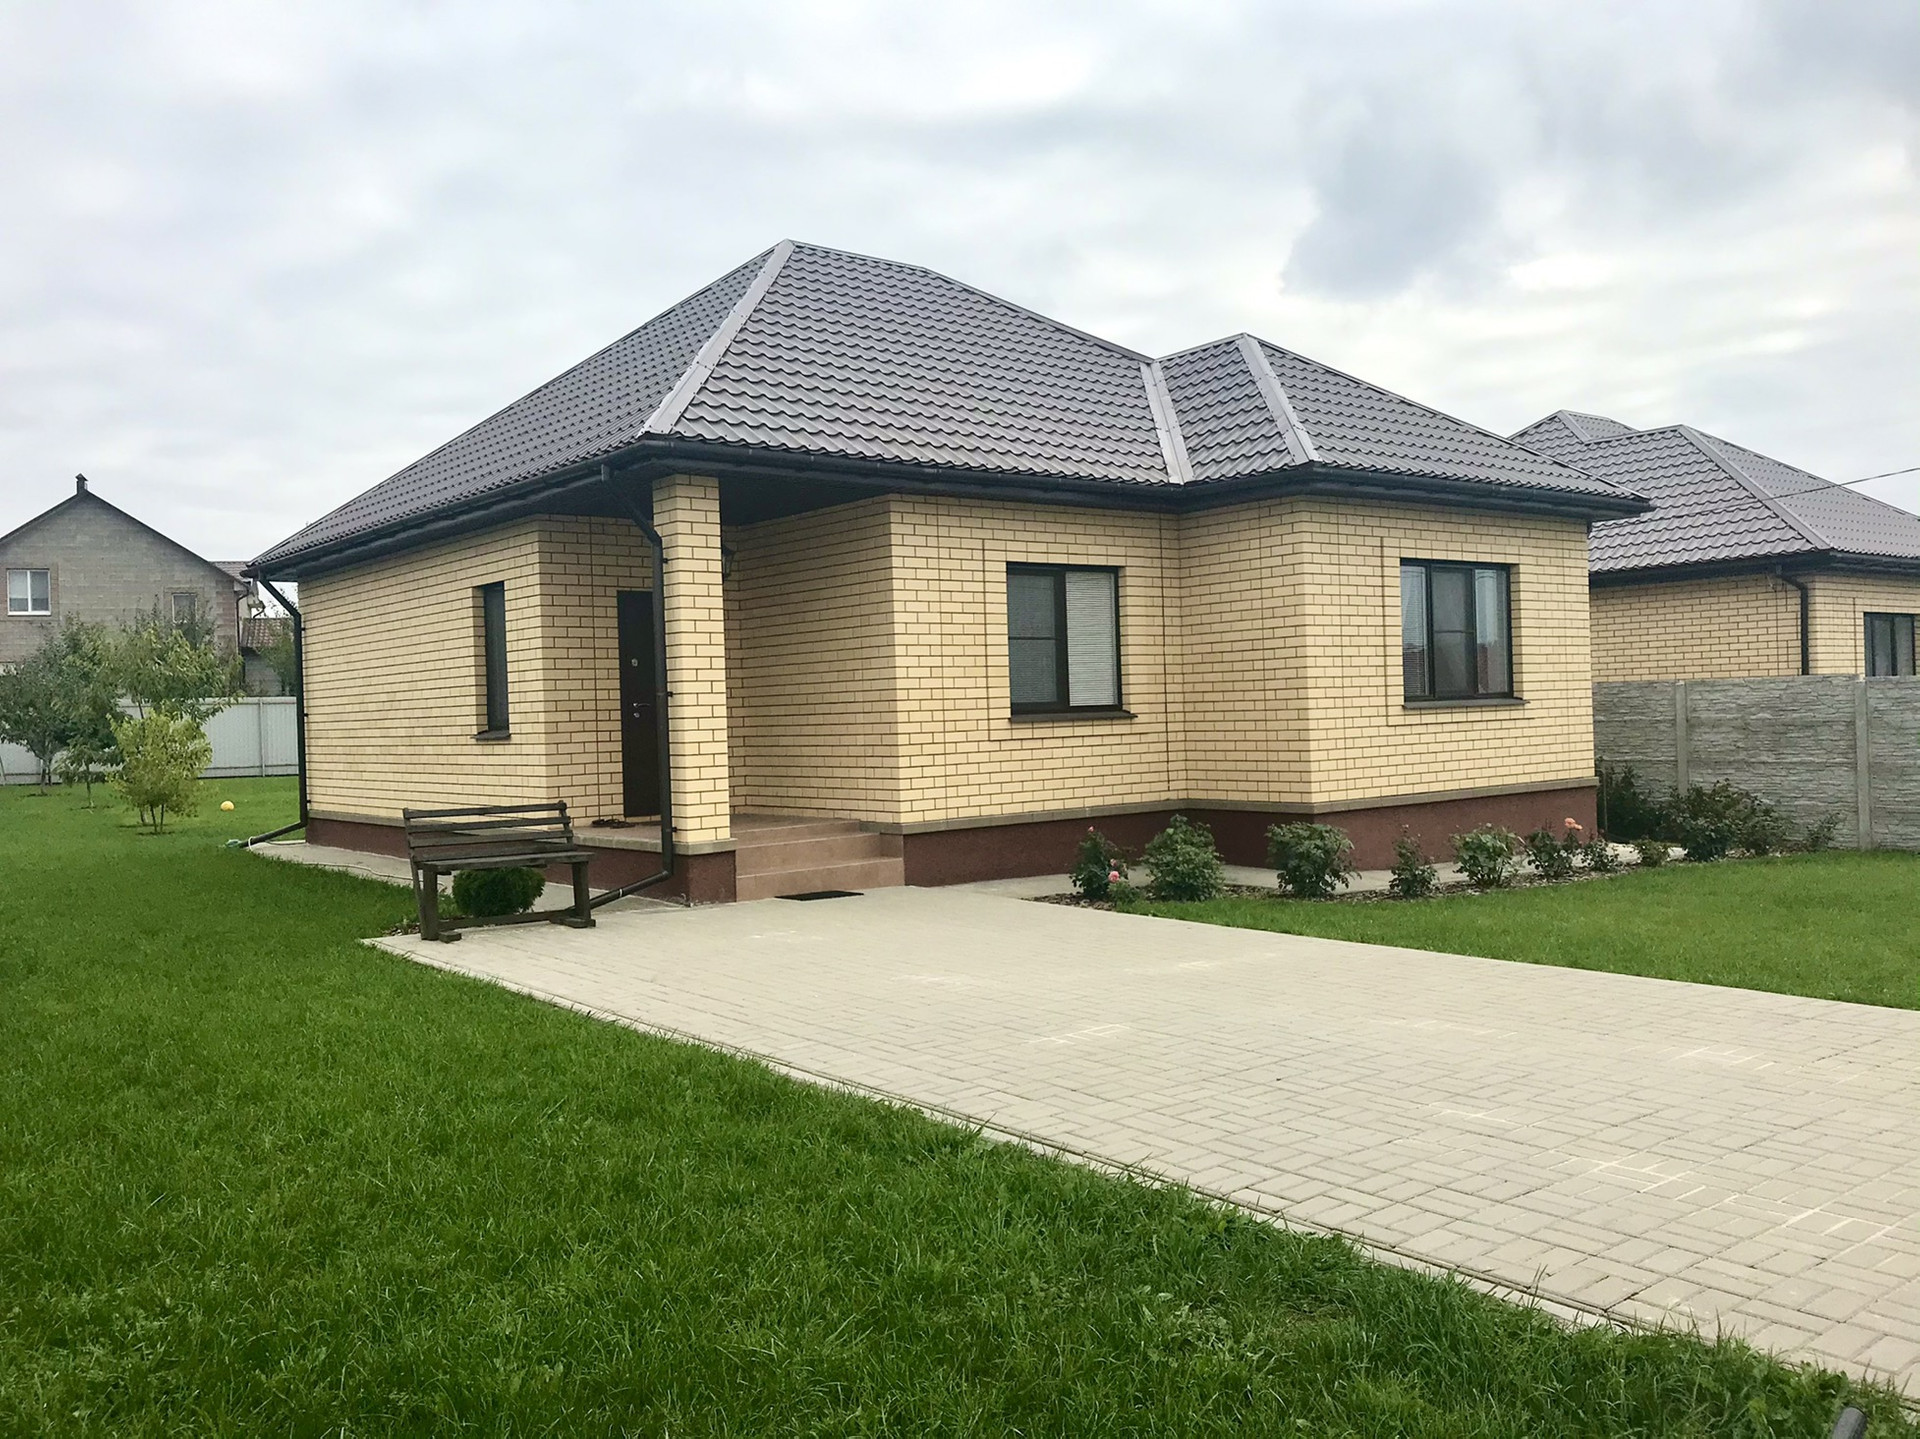 Купить дом в таврово белгородского